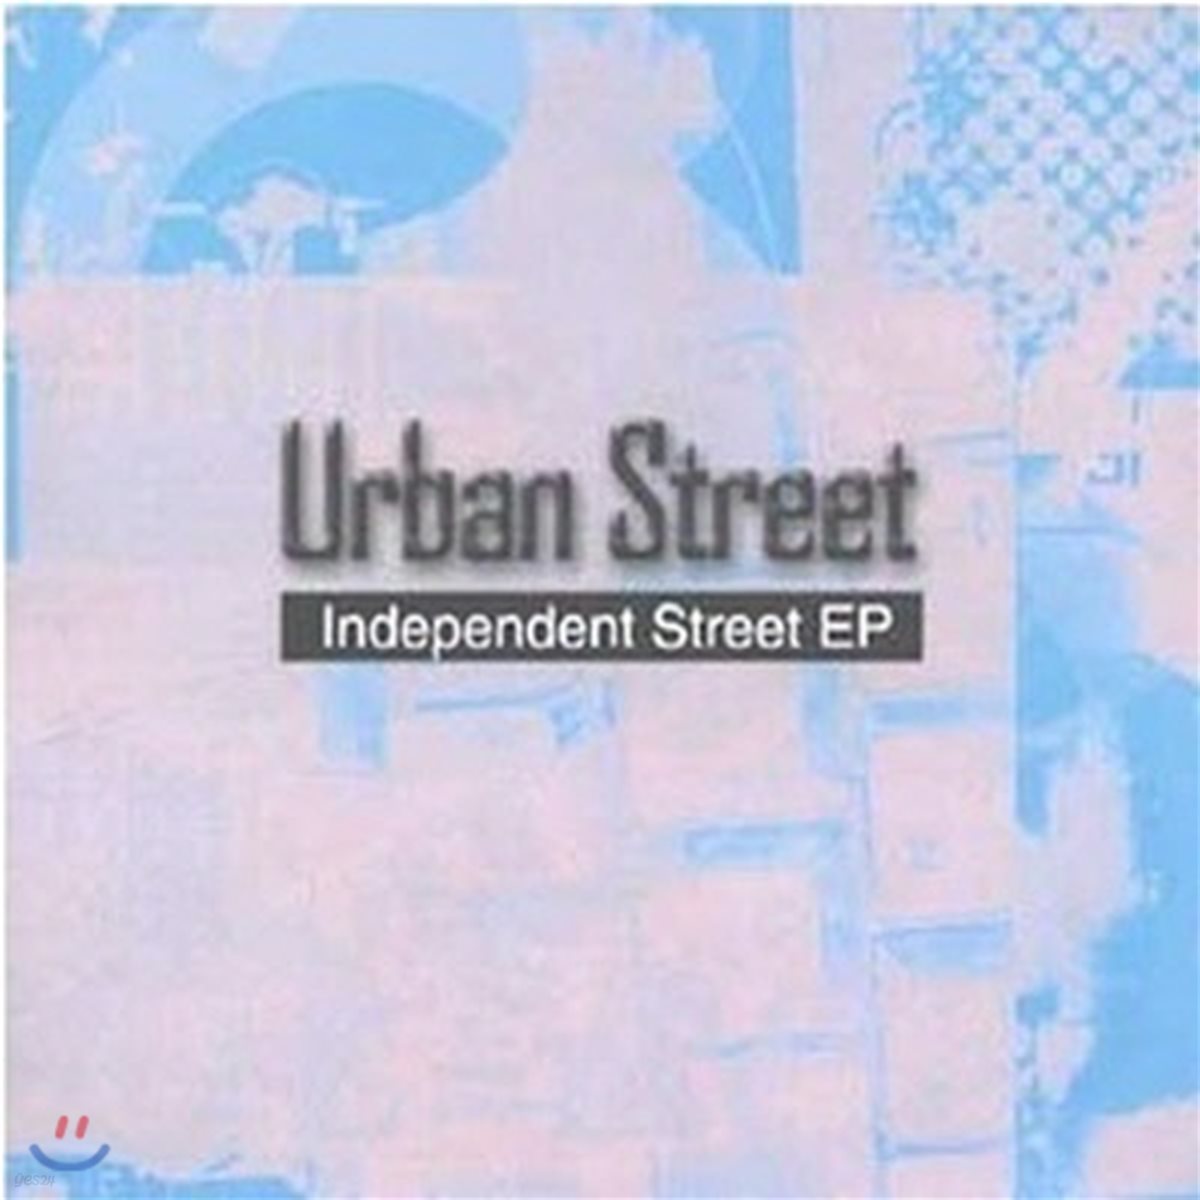 [중고] 어반 스트리트 (Urban Street) / Independent (싸인)